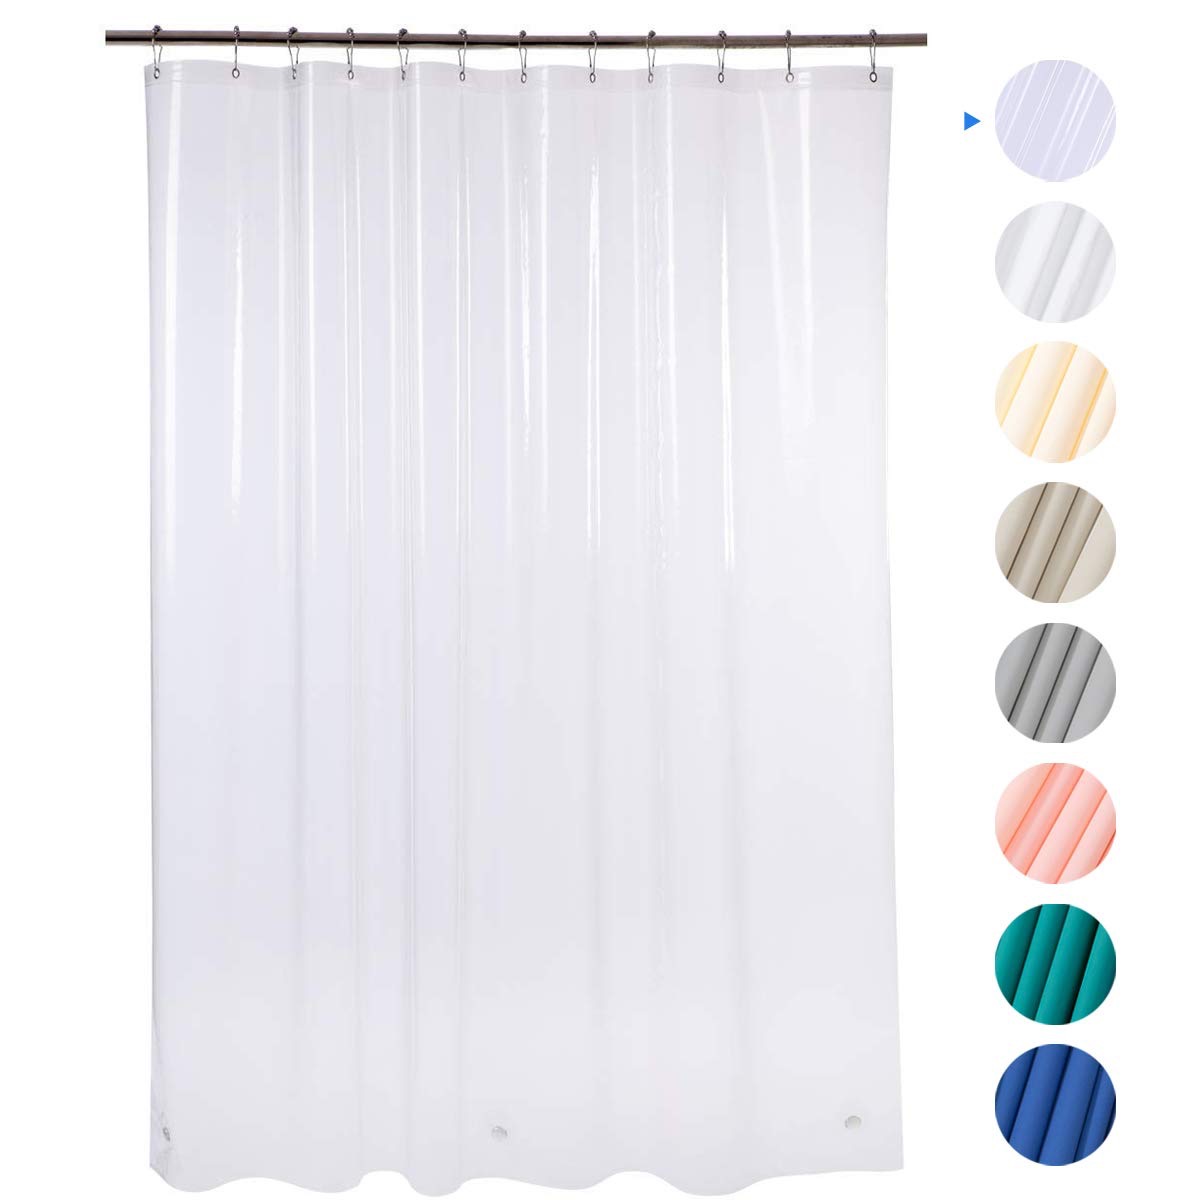 clear shower curtain, essential home supplies